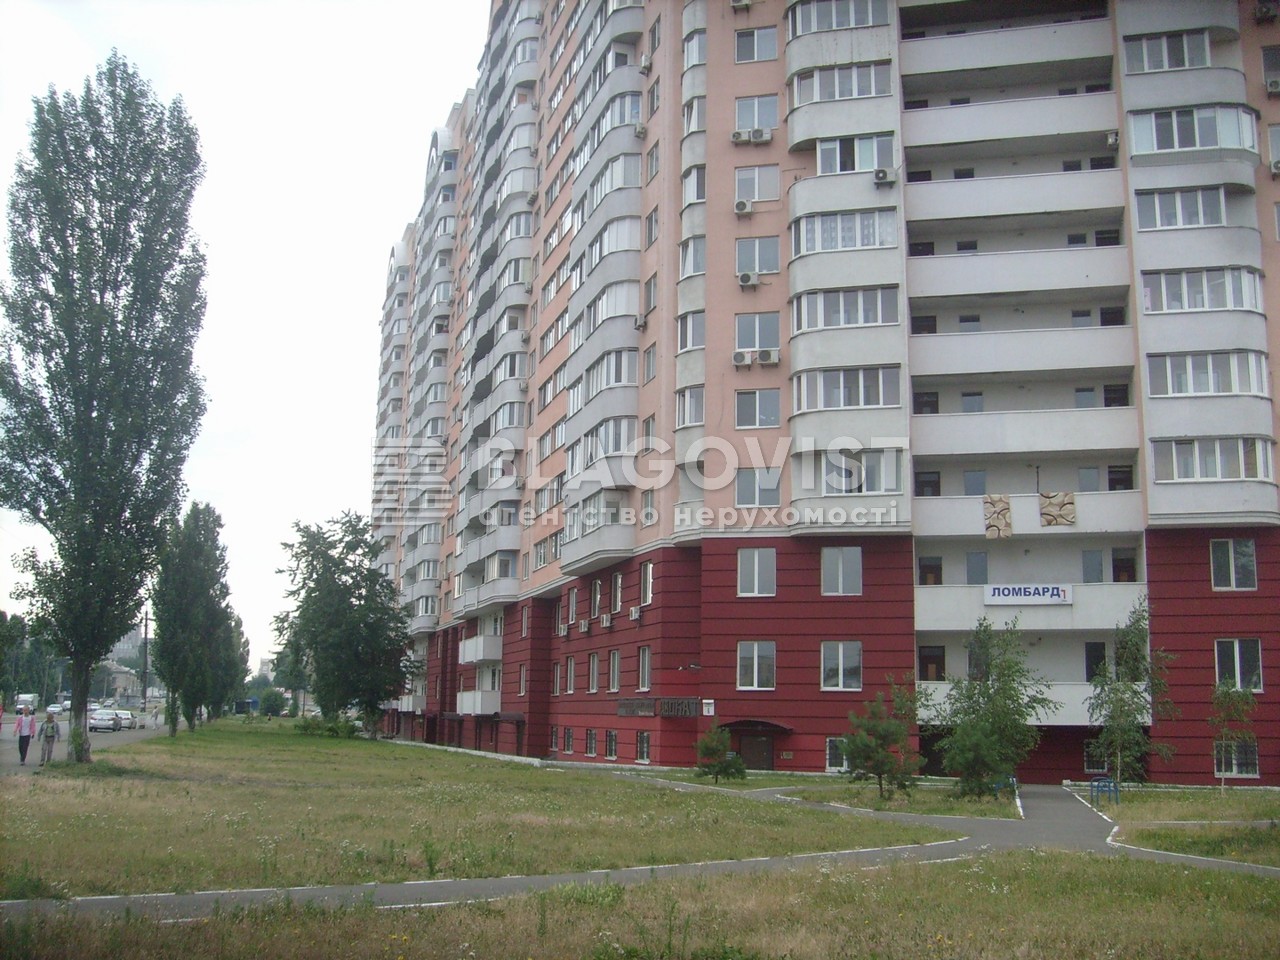 Квартира G-734897, Бориспольская, 6, Киев - Фото 4